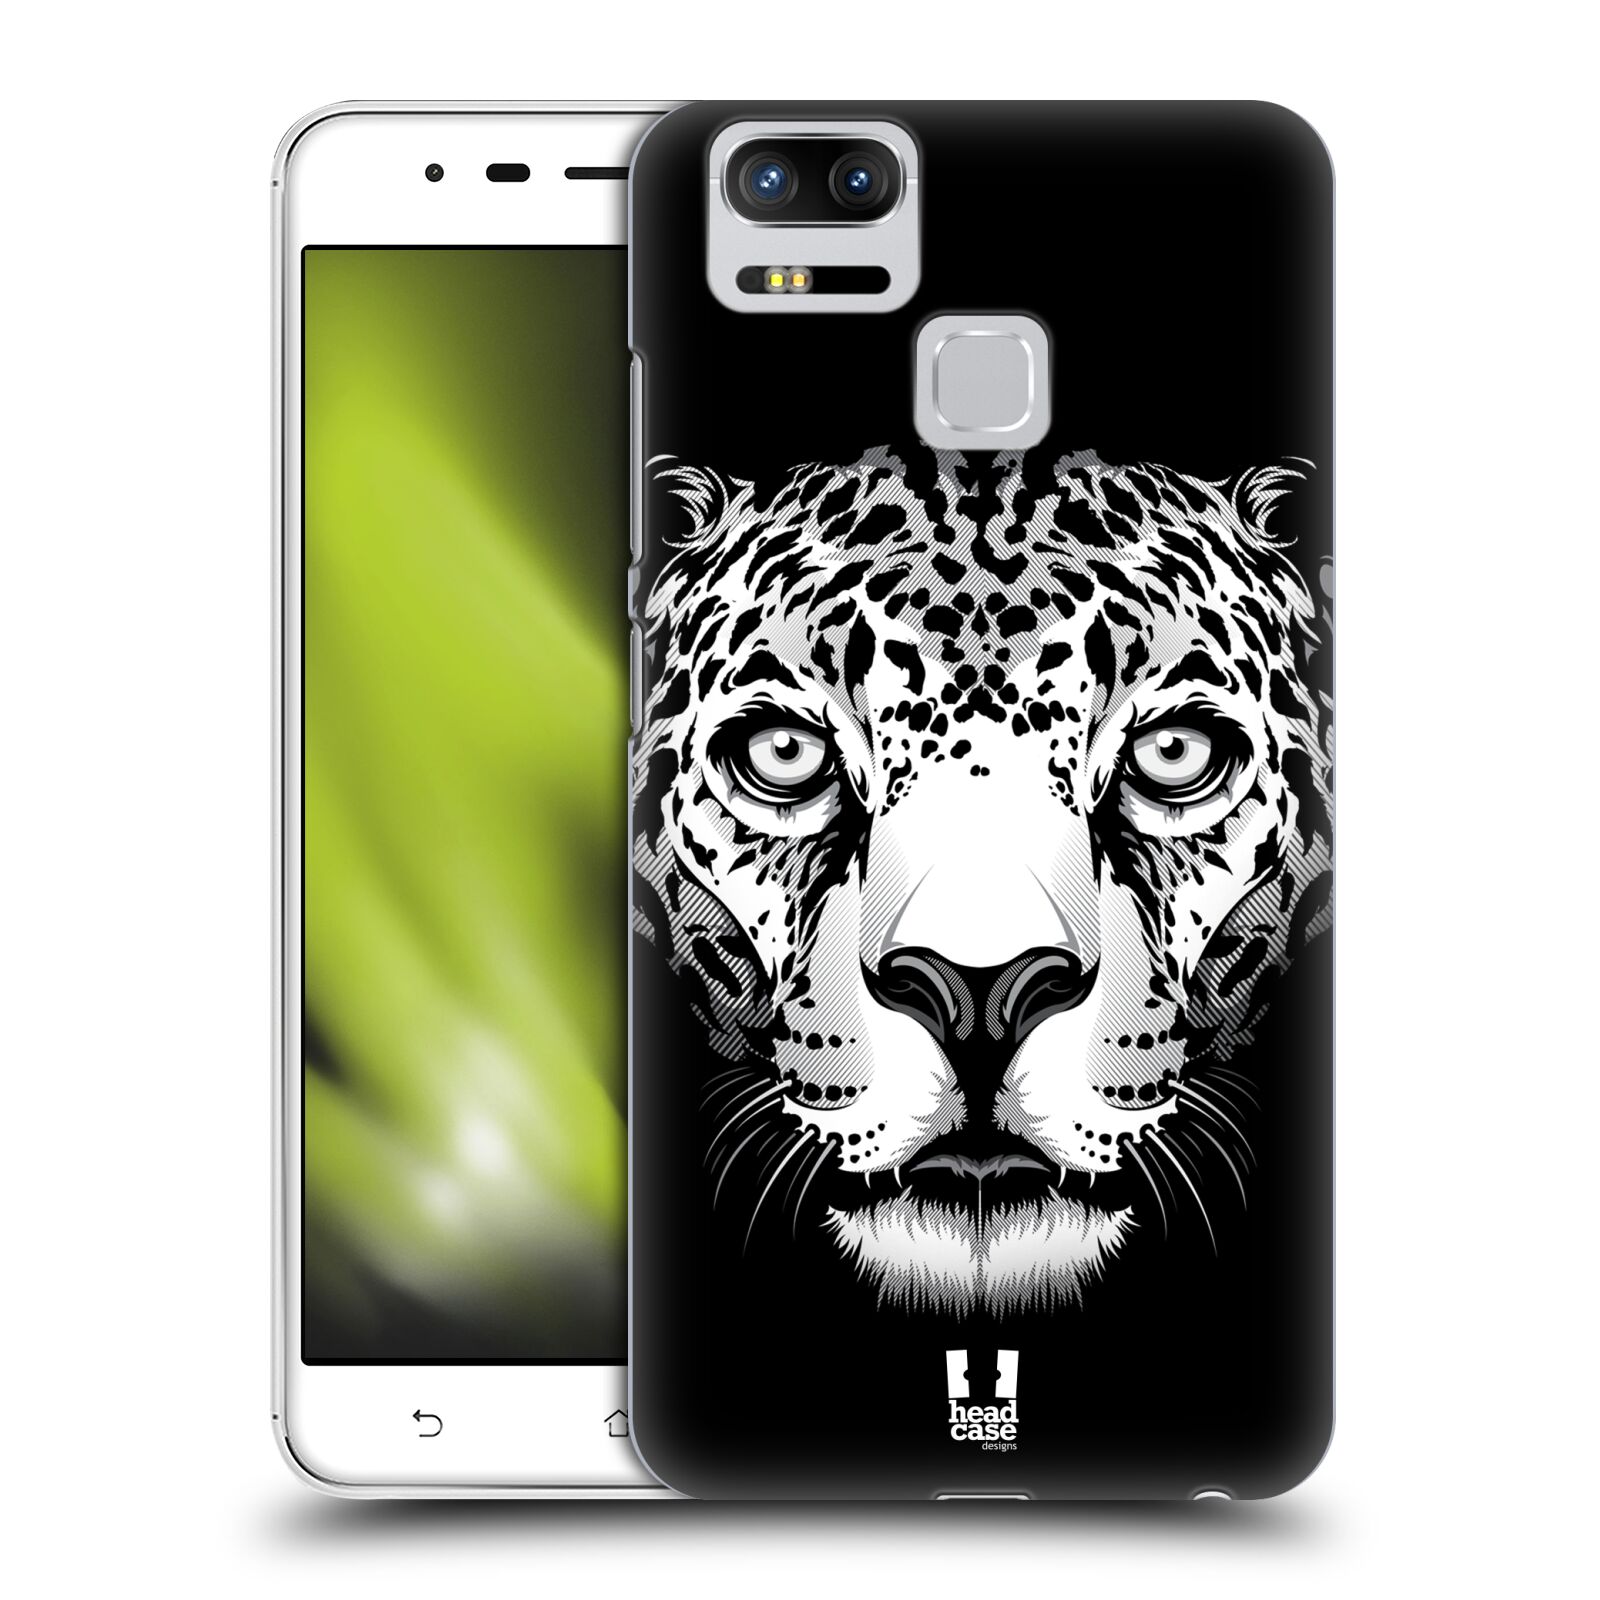 HEAD CASE plastový obal na mobil Asus Zenfone 3 Zoom ZE553KL vzor Zvíře kreslená tvář leopard